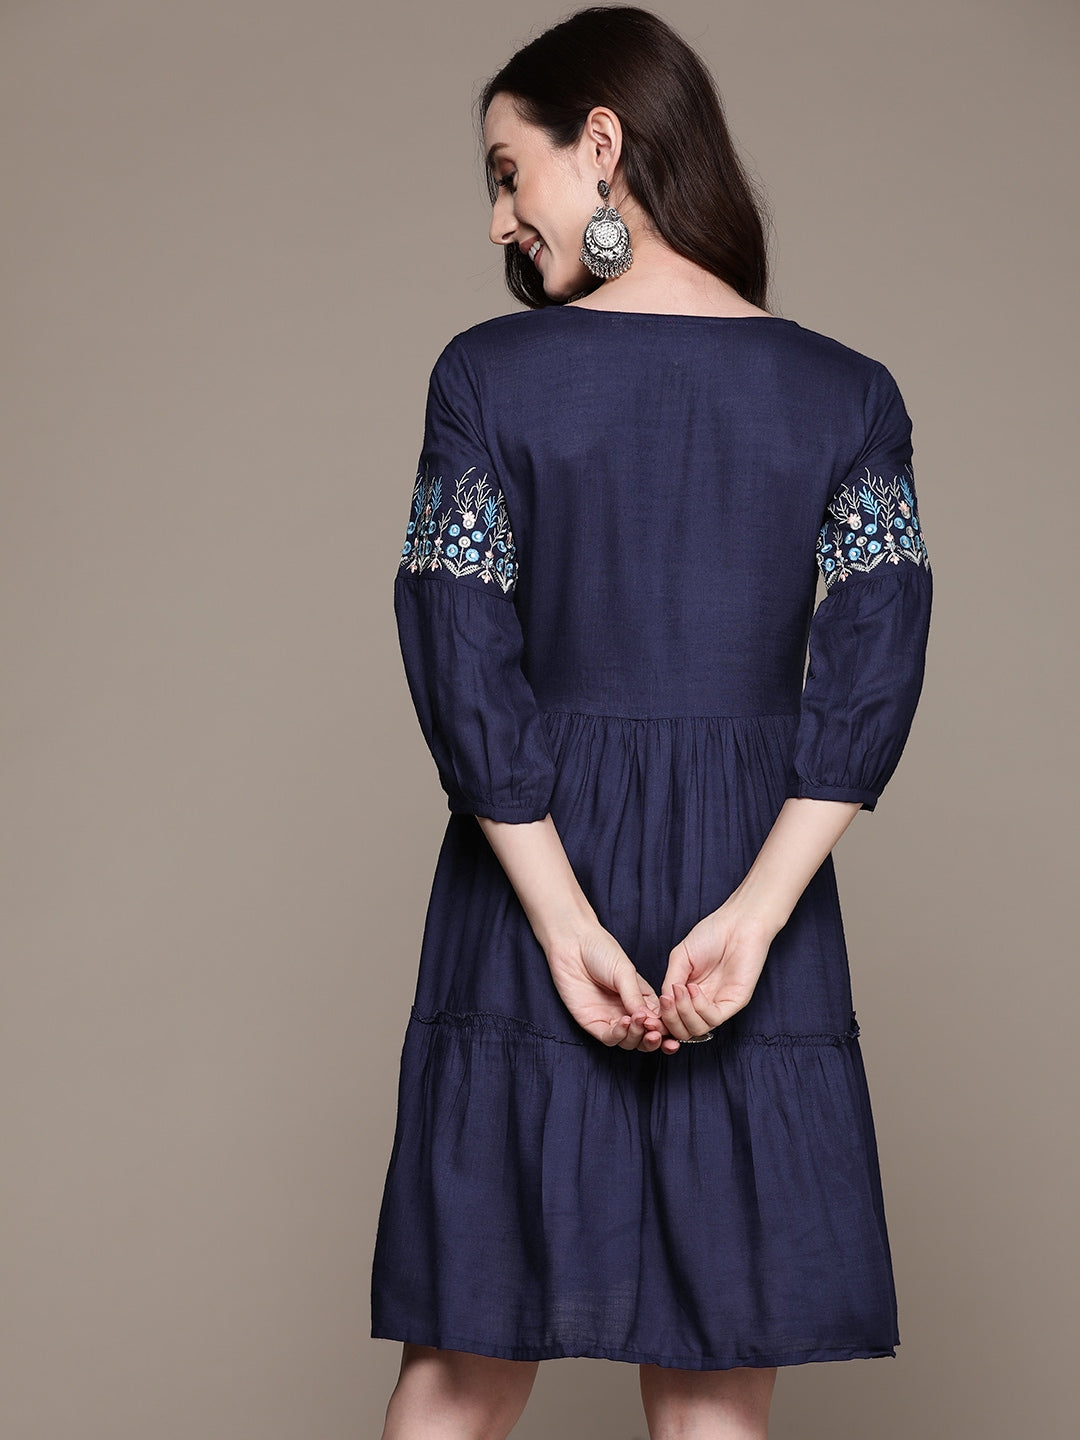 Anubhutee Navy Blue Floral Embroidered Tassel Detail A-Line Dress - Distacart